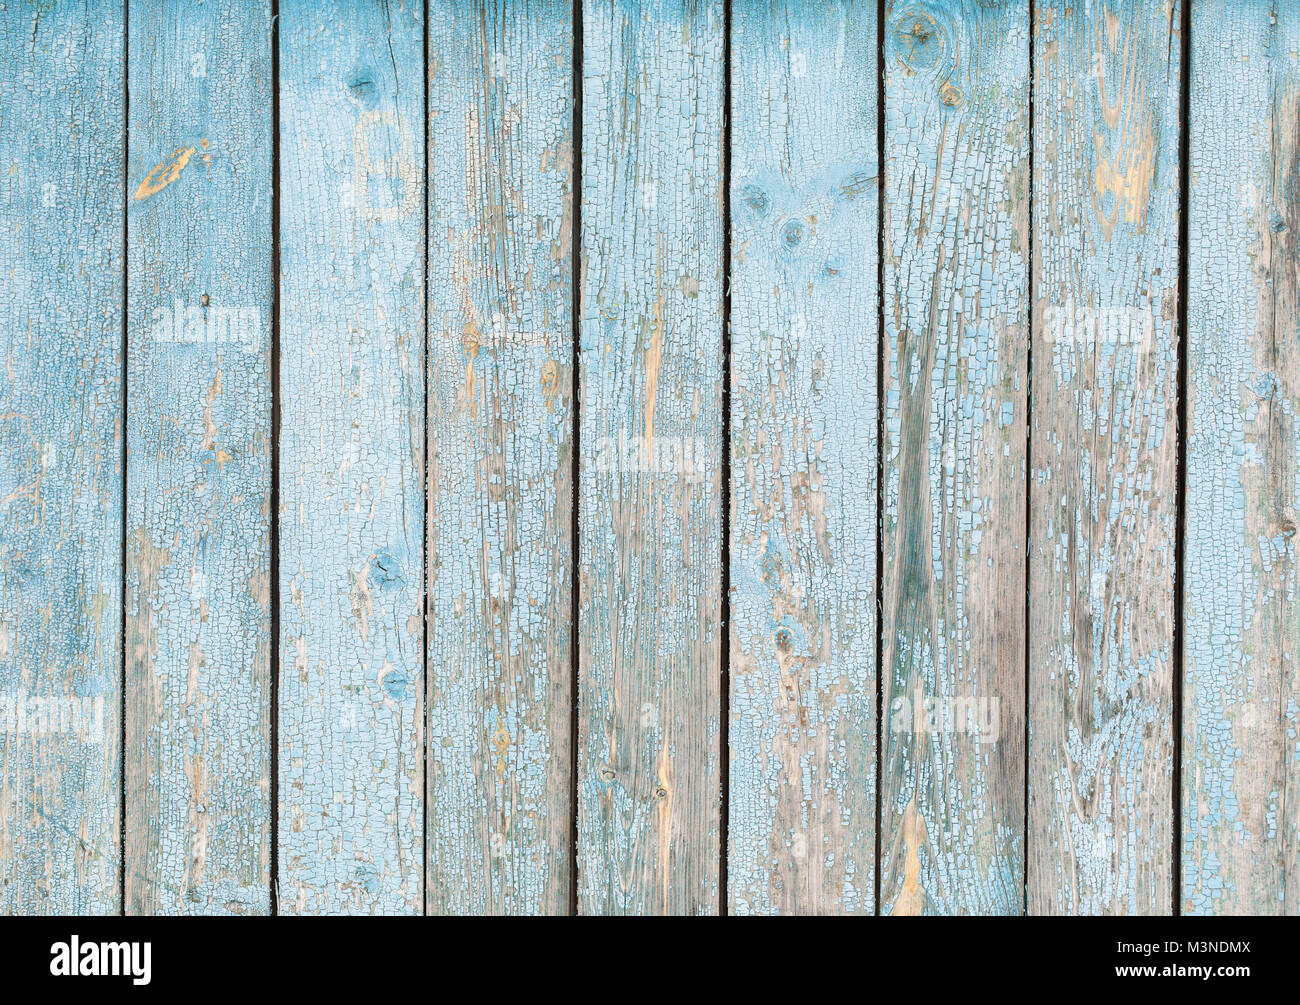 Bleu pastel wood texture background Banque D'Images